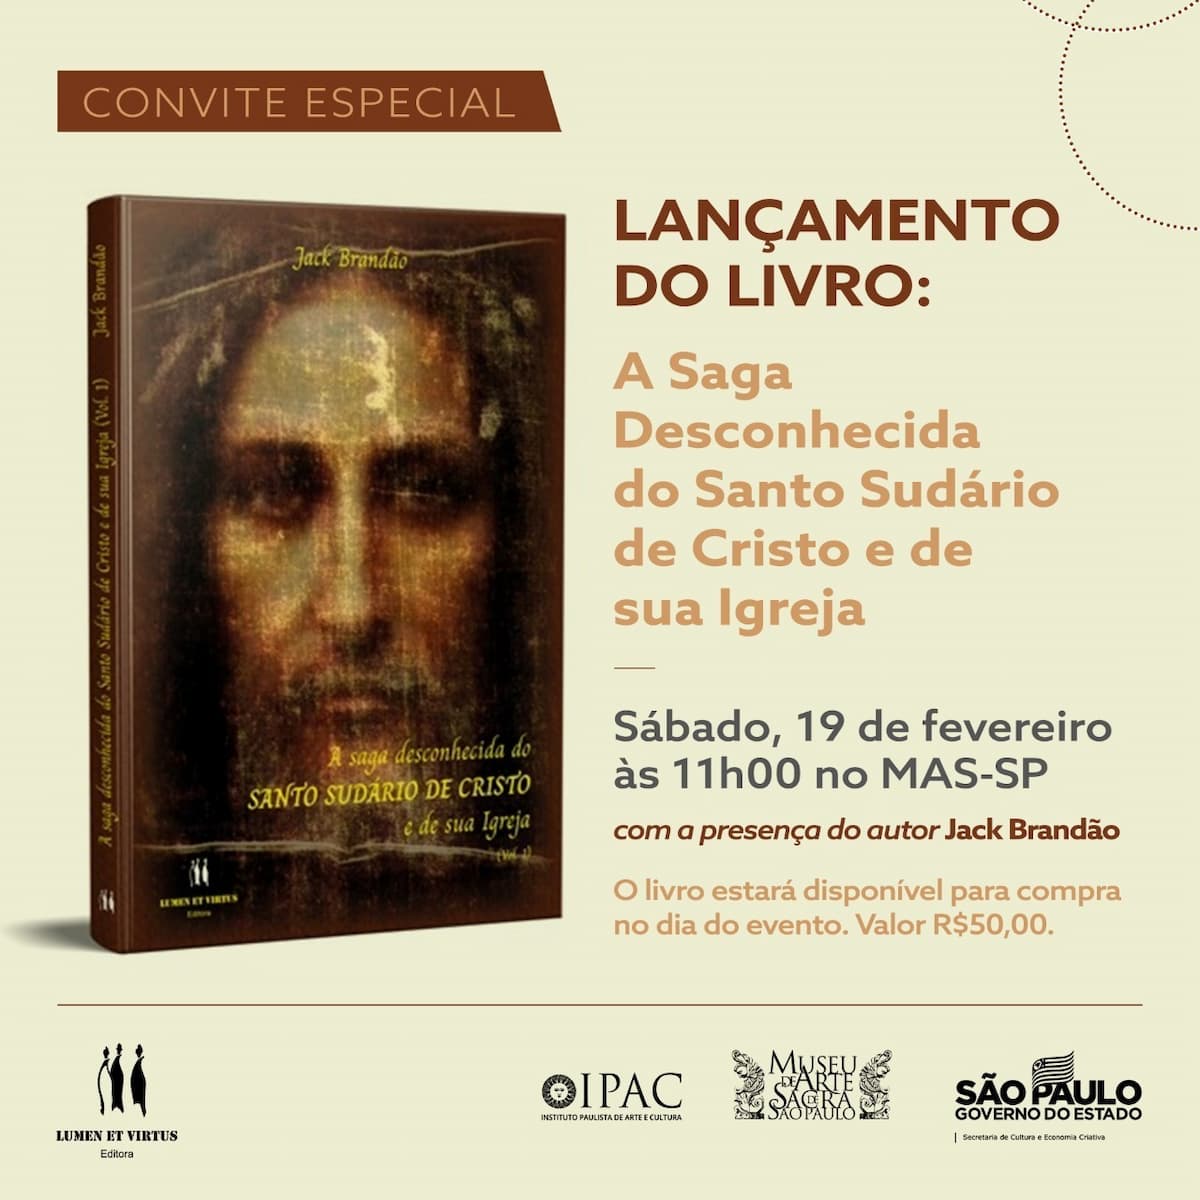 Livro "A saga desconhecida do SUDÁRIO DE CRISTO e de sua Igreja", livro - capa, convite. Divulgação.